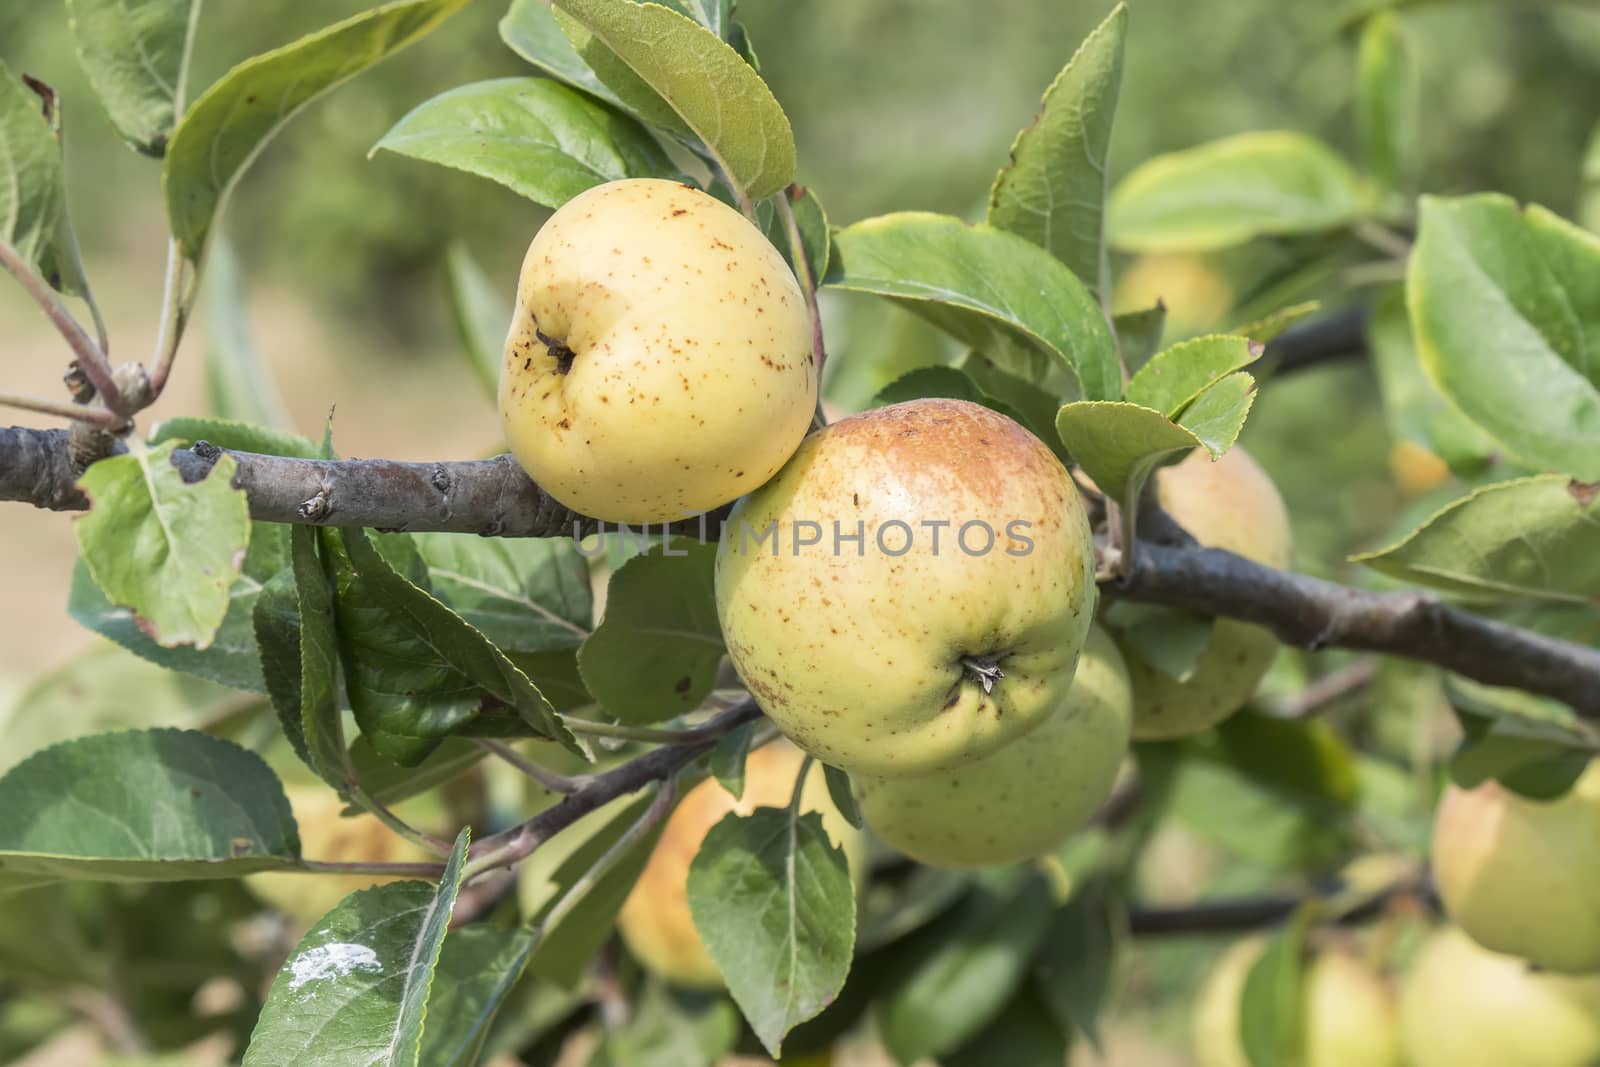 Apples on the tree, apple tree